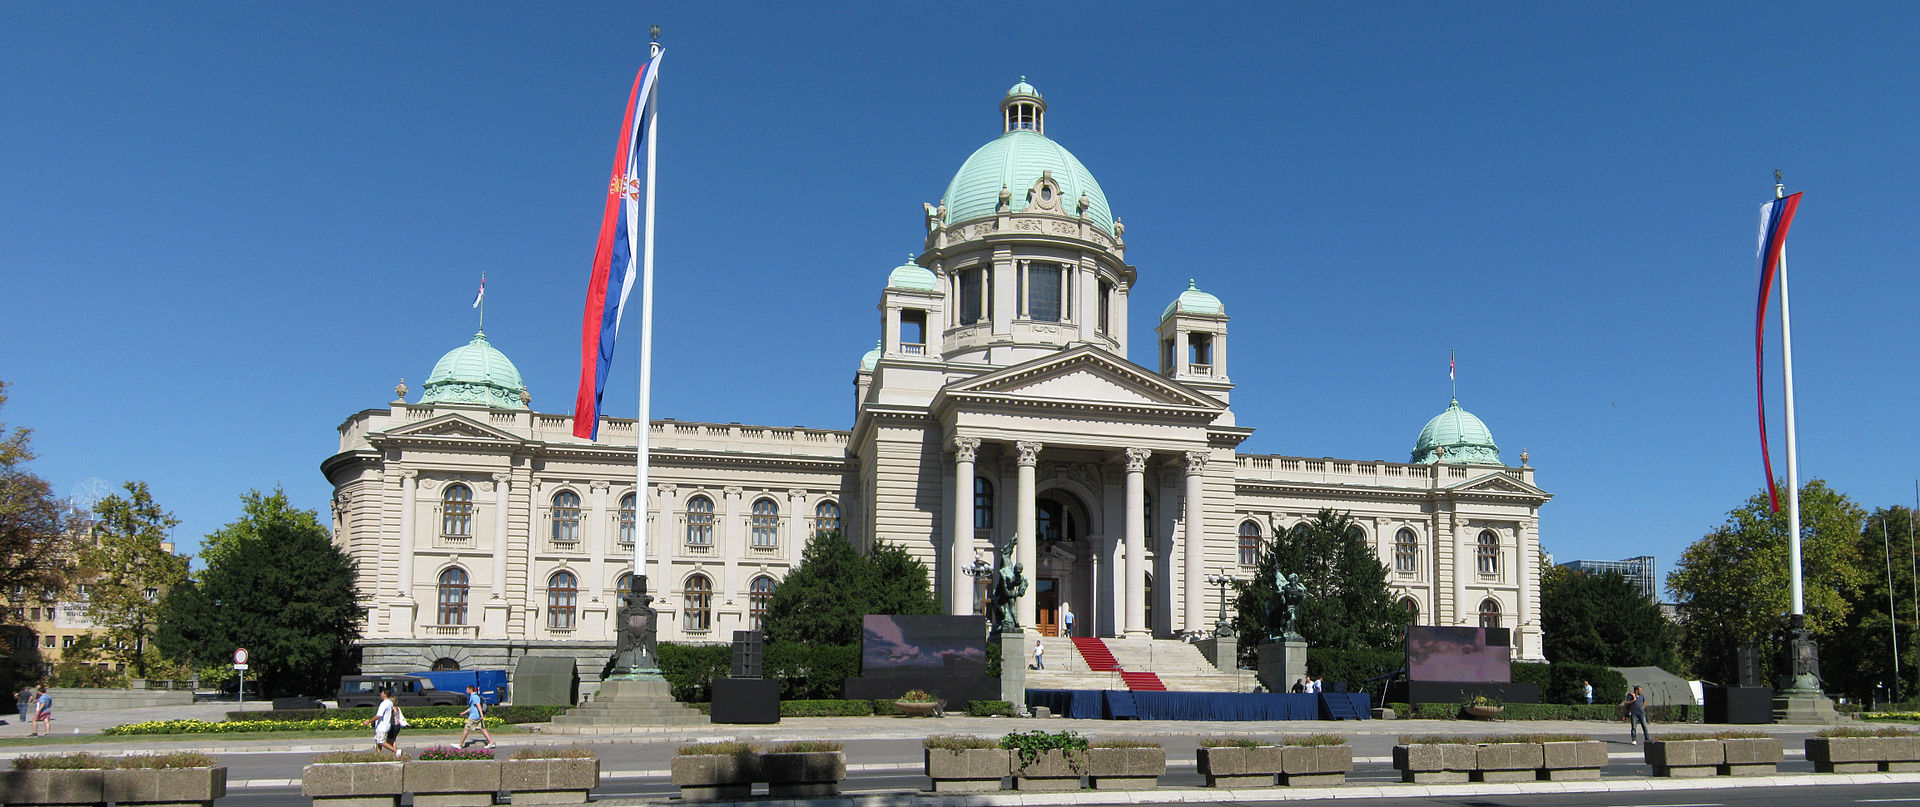 مبنى البرلمان الصربي في بلغراد (ويكيبيديا)